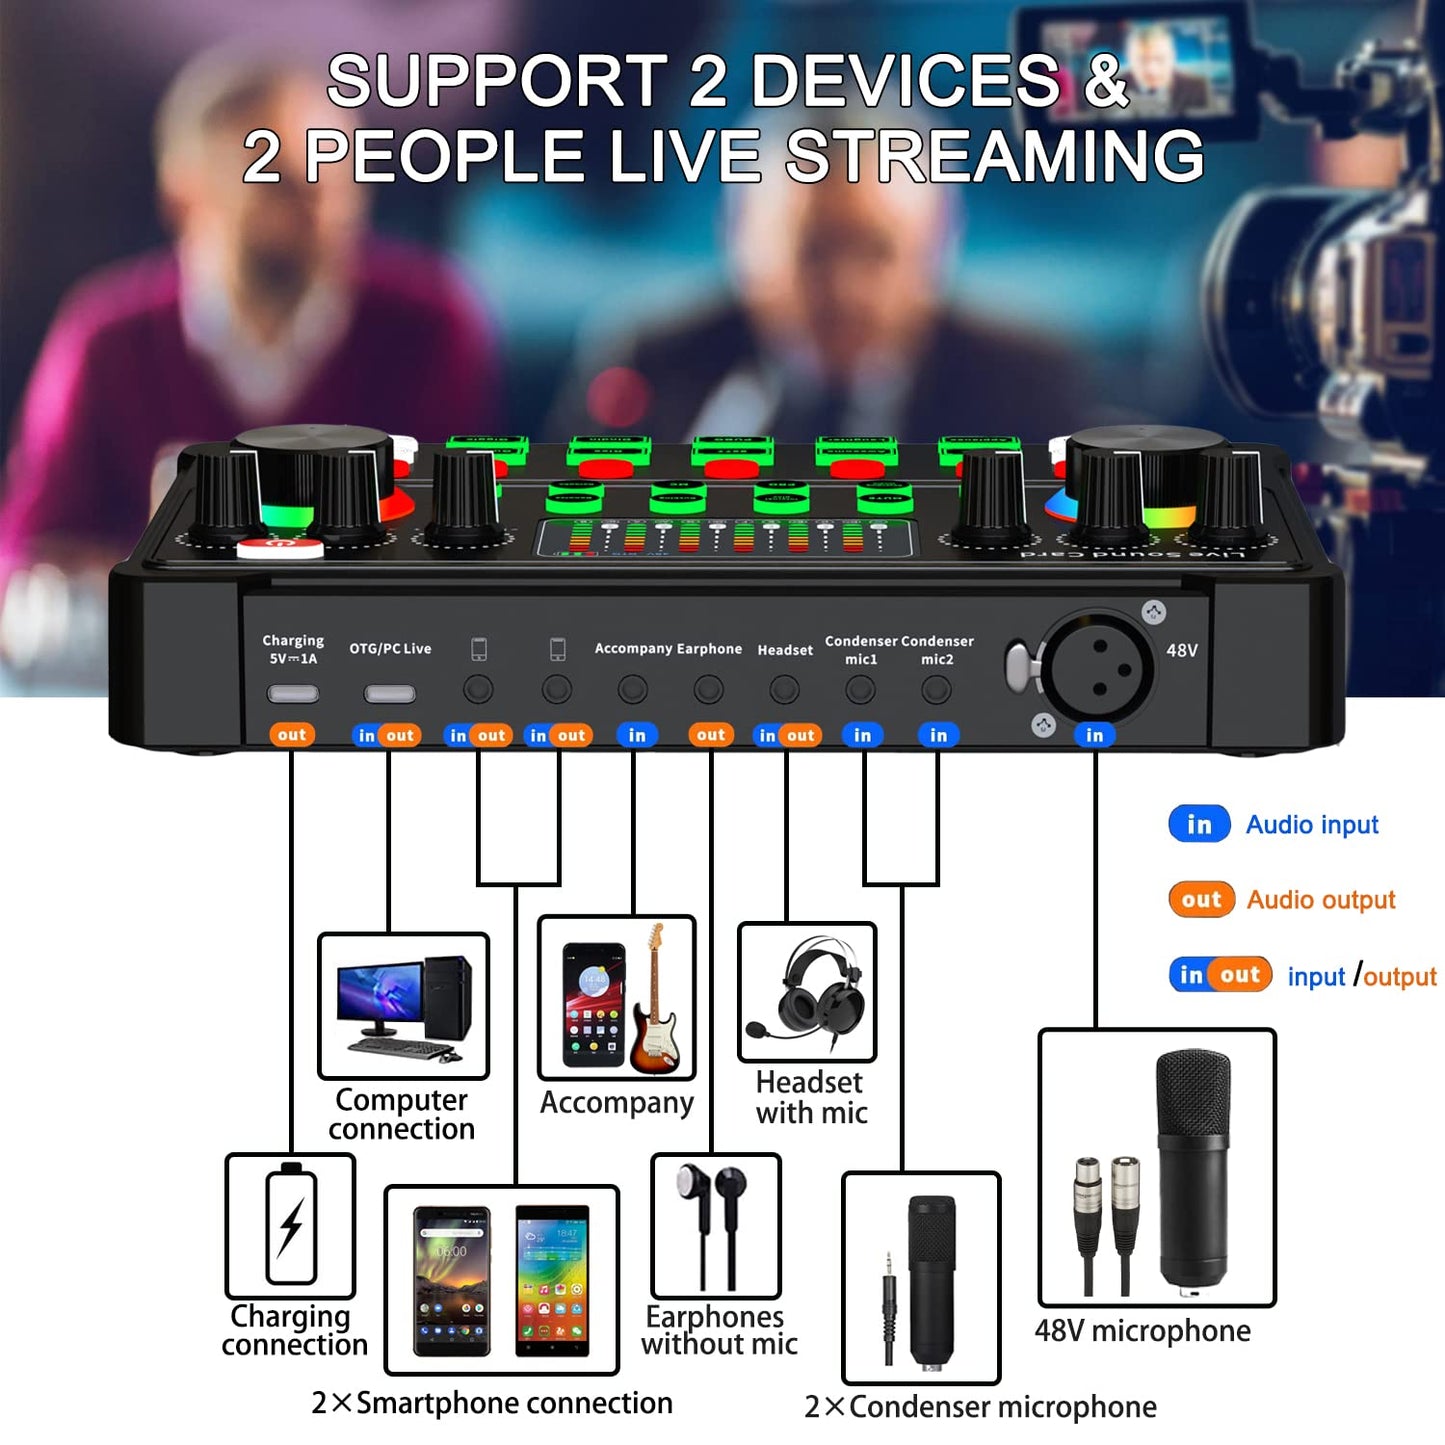 Sktome M300-ZM01 Paquete de micrófono XLR, 48 V, soporte ajustable, reducción de ruido DSP dual, 4 cambiadores de voz, iluminación RGB, garantía de 12 meses